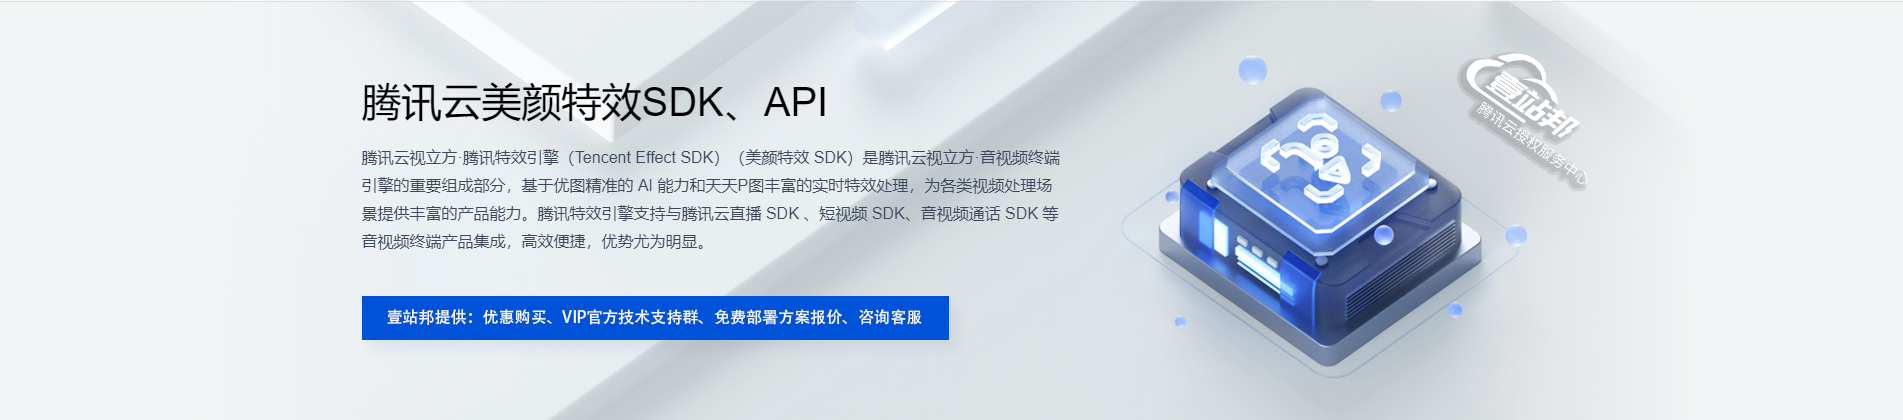 腾讯云美颜特效 SDK、API 腾讯云视立方·腾讯特效 SDK（Tencent Effect SDK）（美颜特效 SDK）是音视频终端 SDK（腾讯云视立方）的重要组成部分，基于优图精准的 AI 能力和天天P图丰富的实时特效处理，为各类视频处理场景提供丰富的产品能力。腾讯特效 SDK 支持与腾讯云直播 SDK 、短视频 SDK、音视频通话 SDK 等音视频终端产品集成，高效便捷，优势尤为明显。